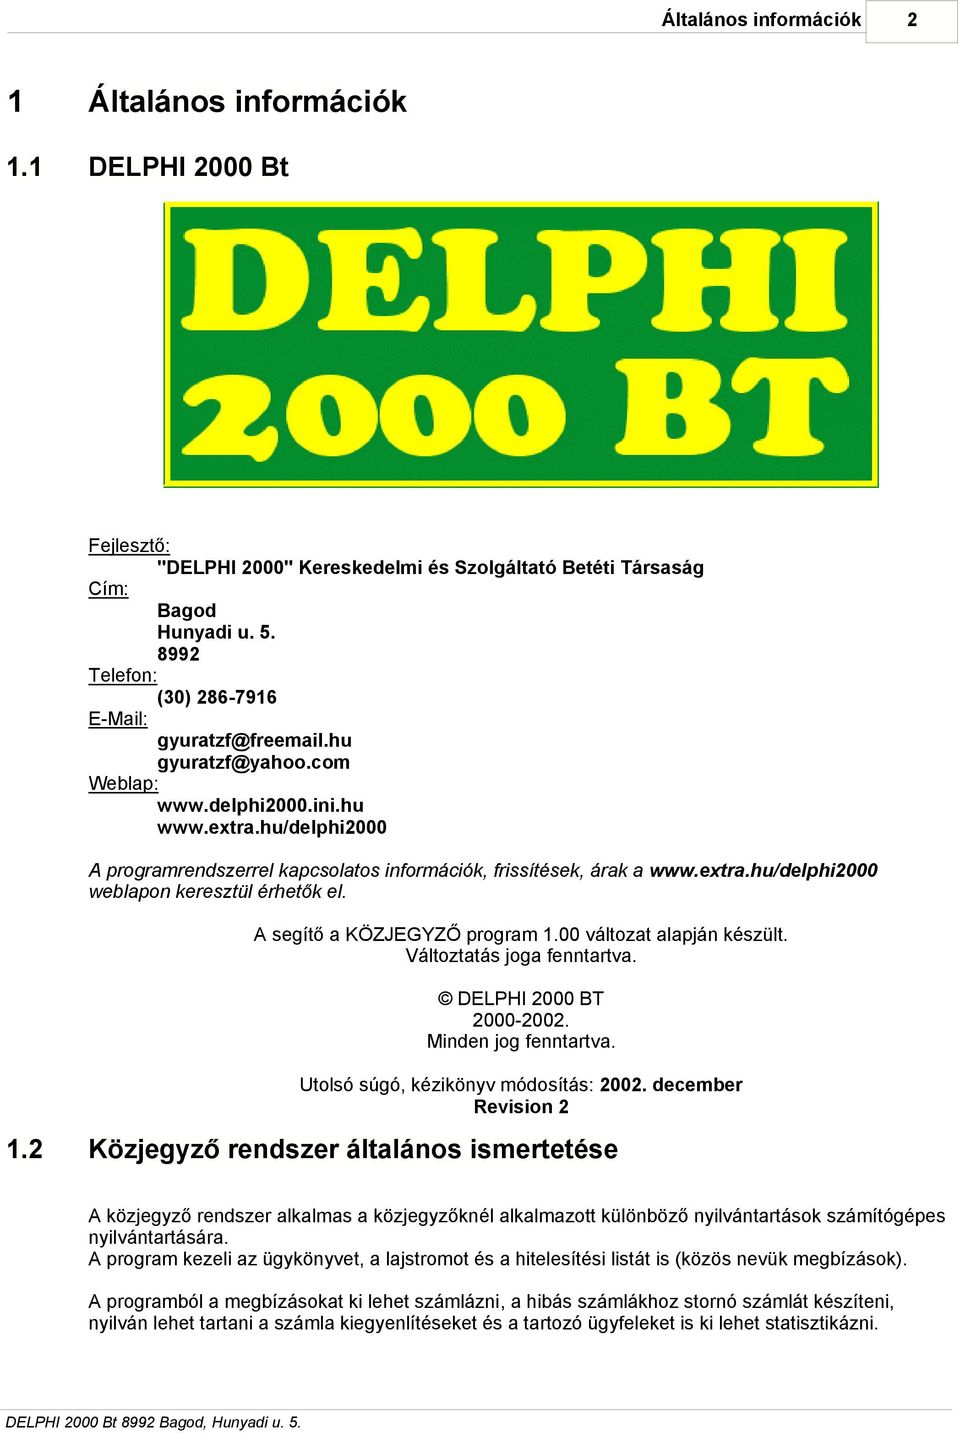 extra.hu/delphi2000 weblapon keresztül érhetők el. A segítő a KÖZJEGYZŐ program 1.00 változat alapján készült. Változtatás joga fenntartva. DELPHI 2000 BT 2000-2002. Minden jog fenntartva.